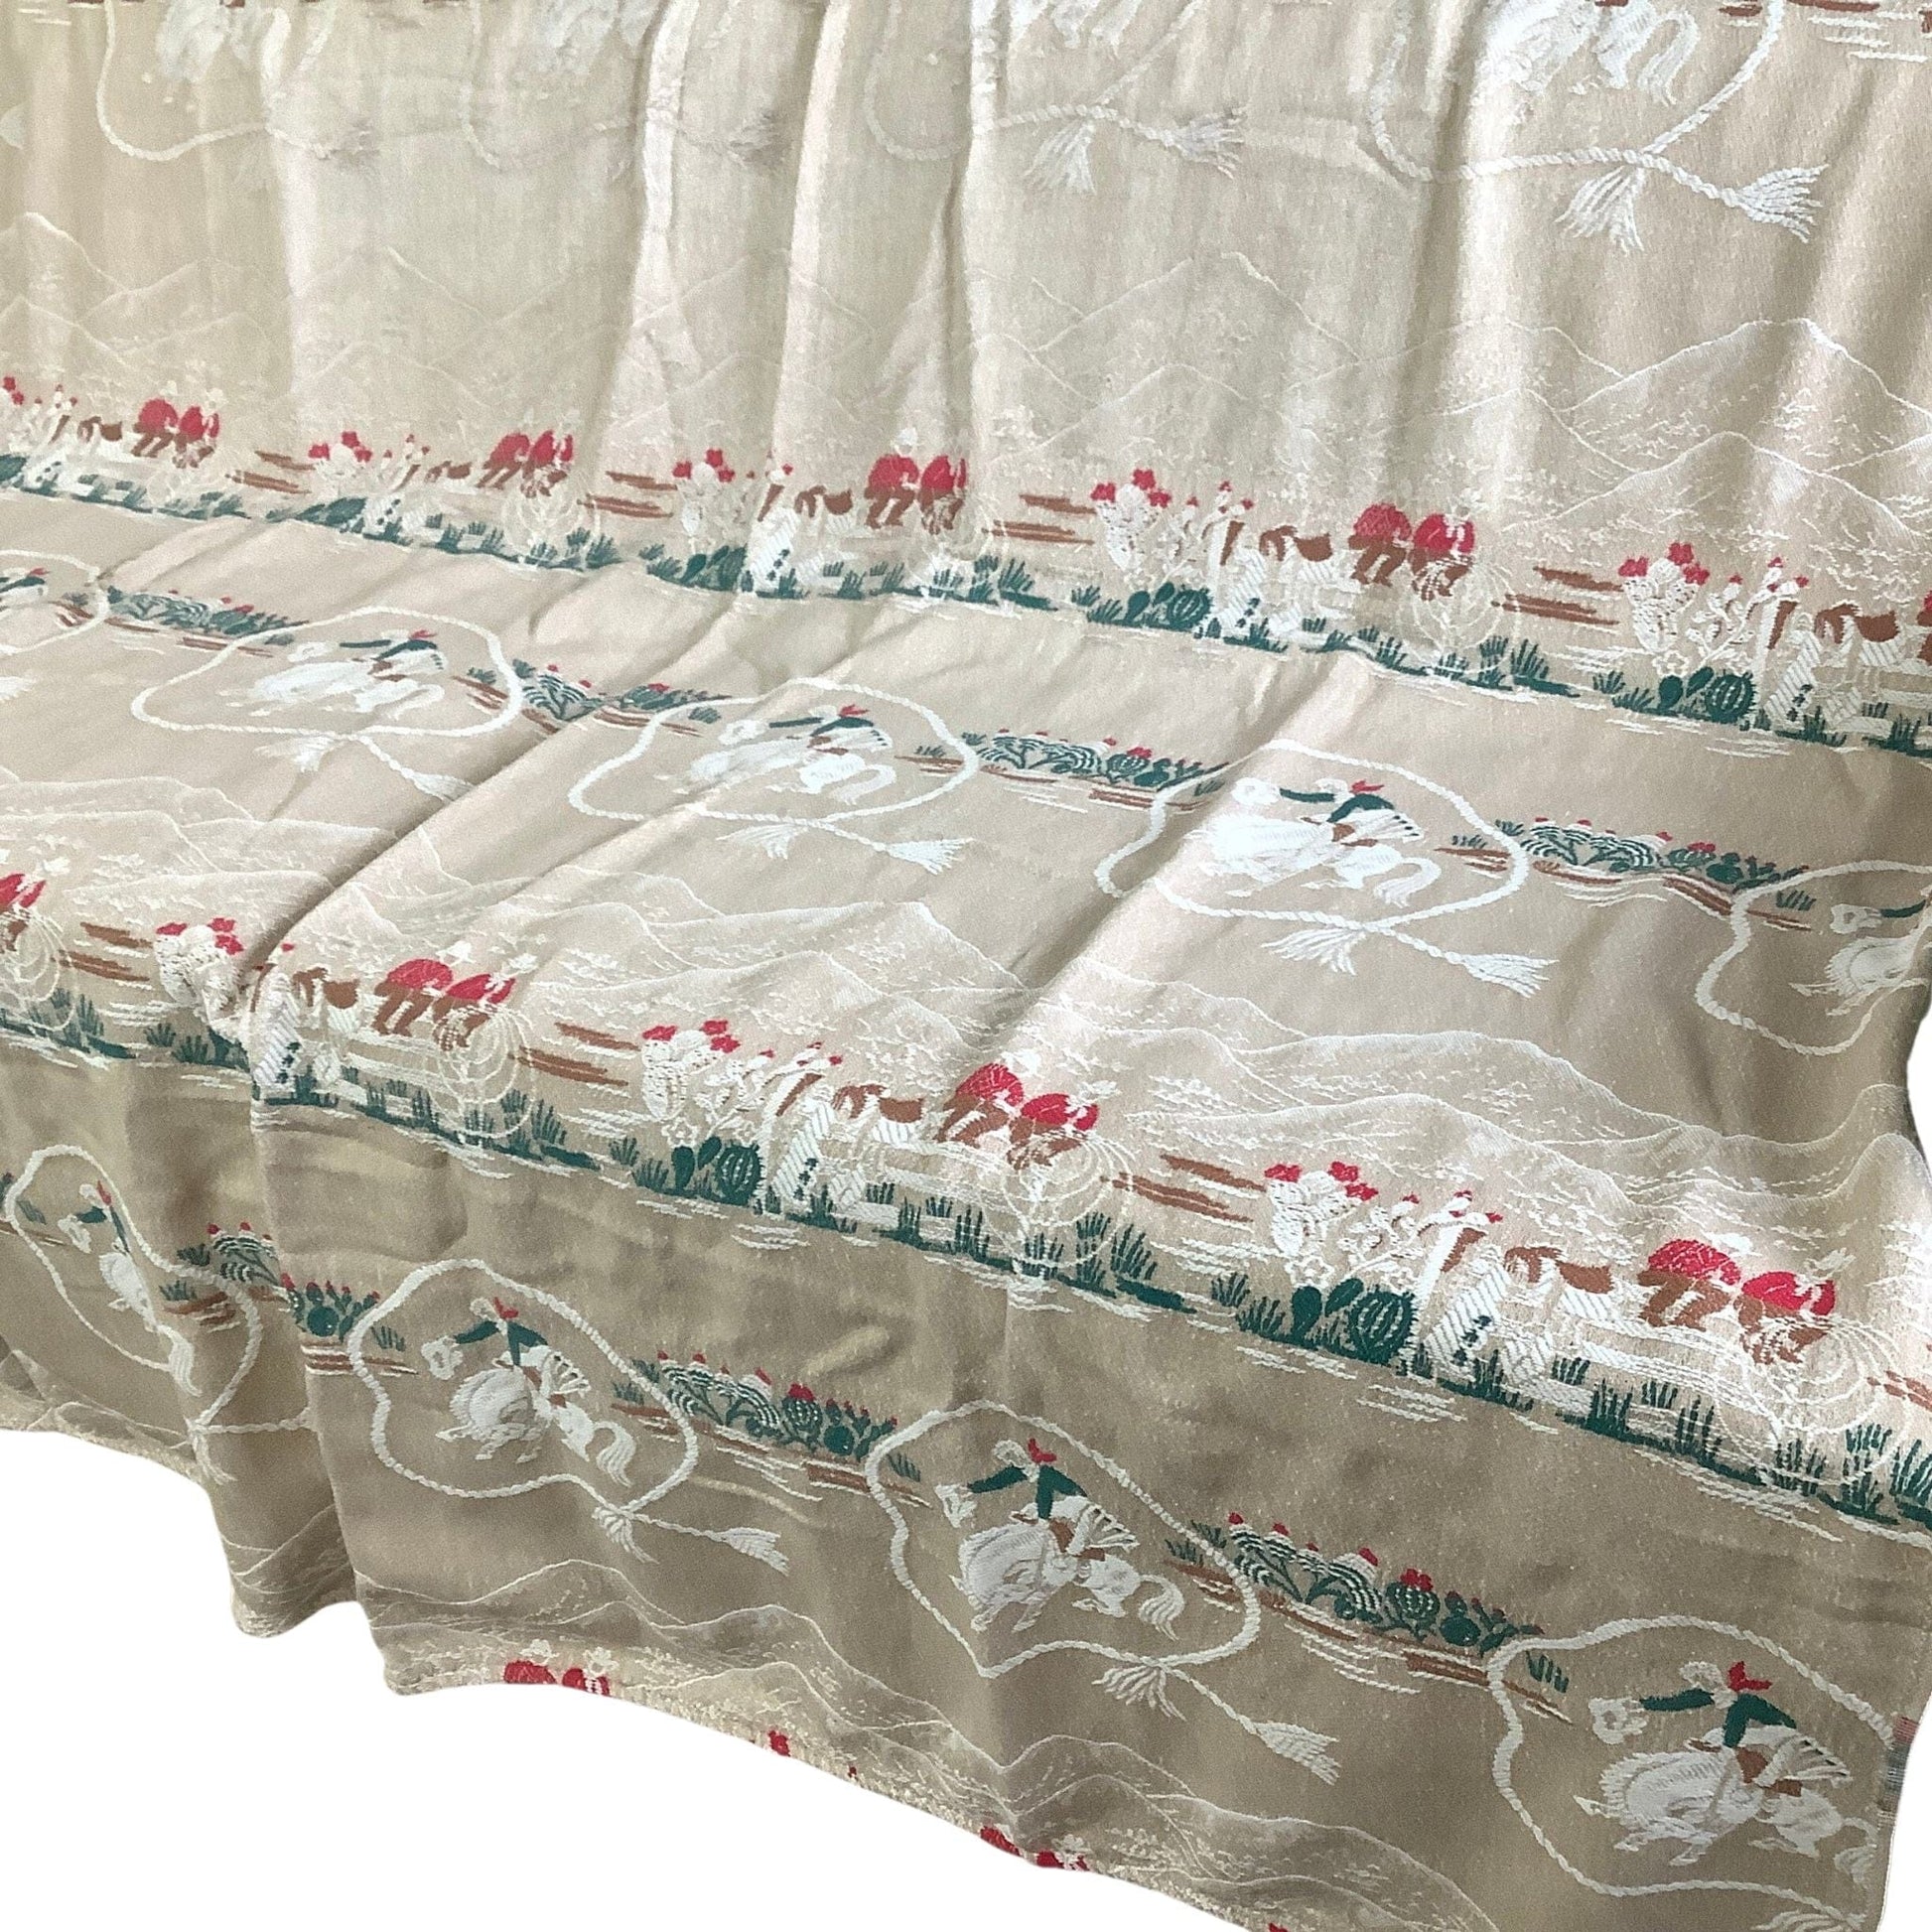 VTG Cowboy Bedspread Multi / Cotton / Vintage 1950s